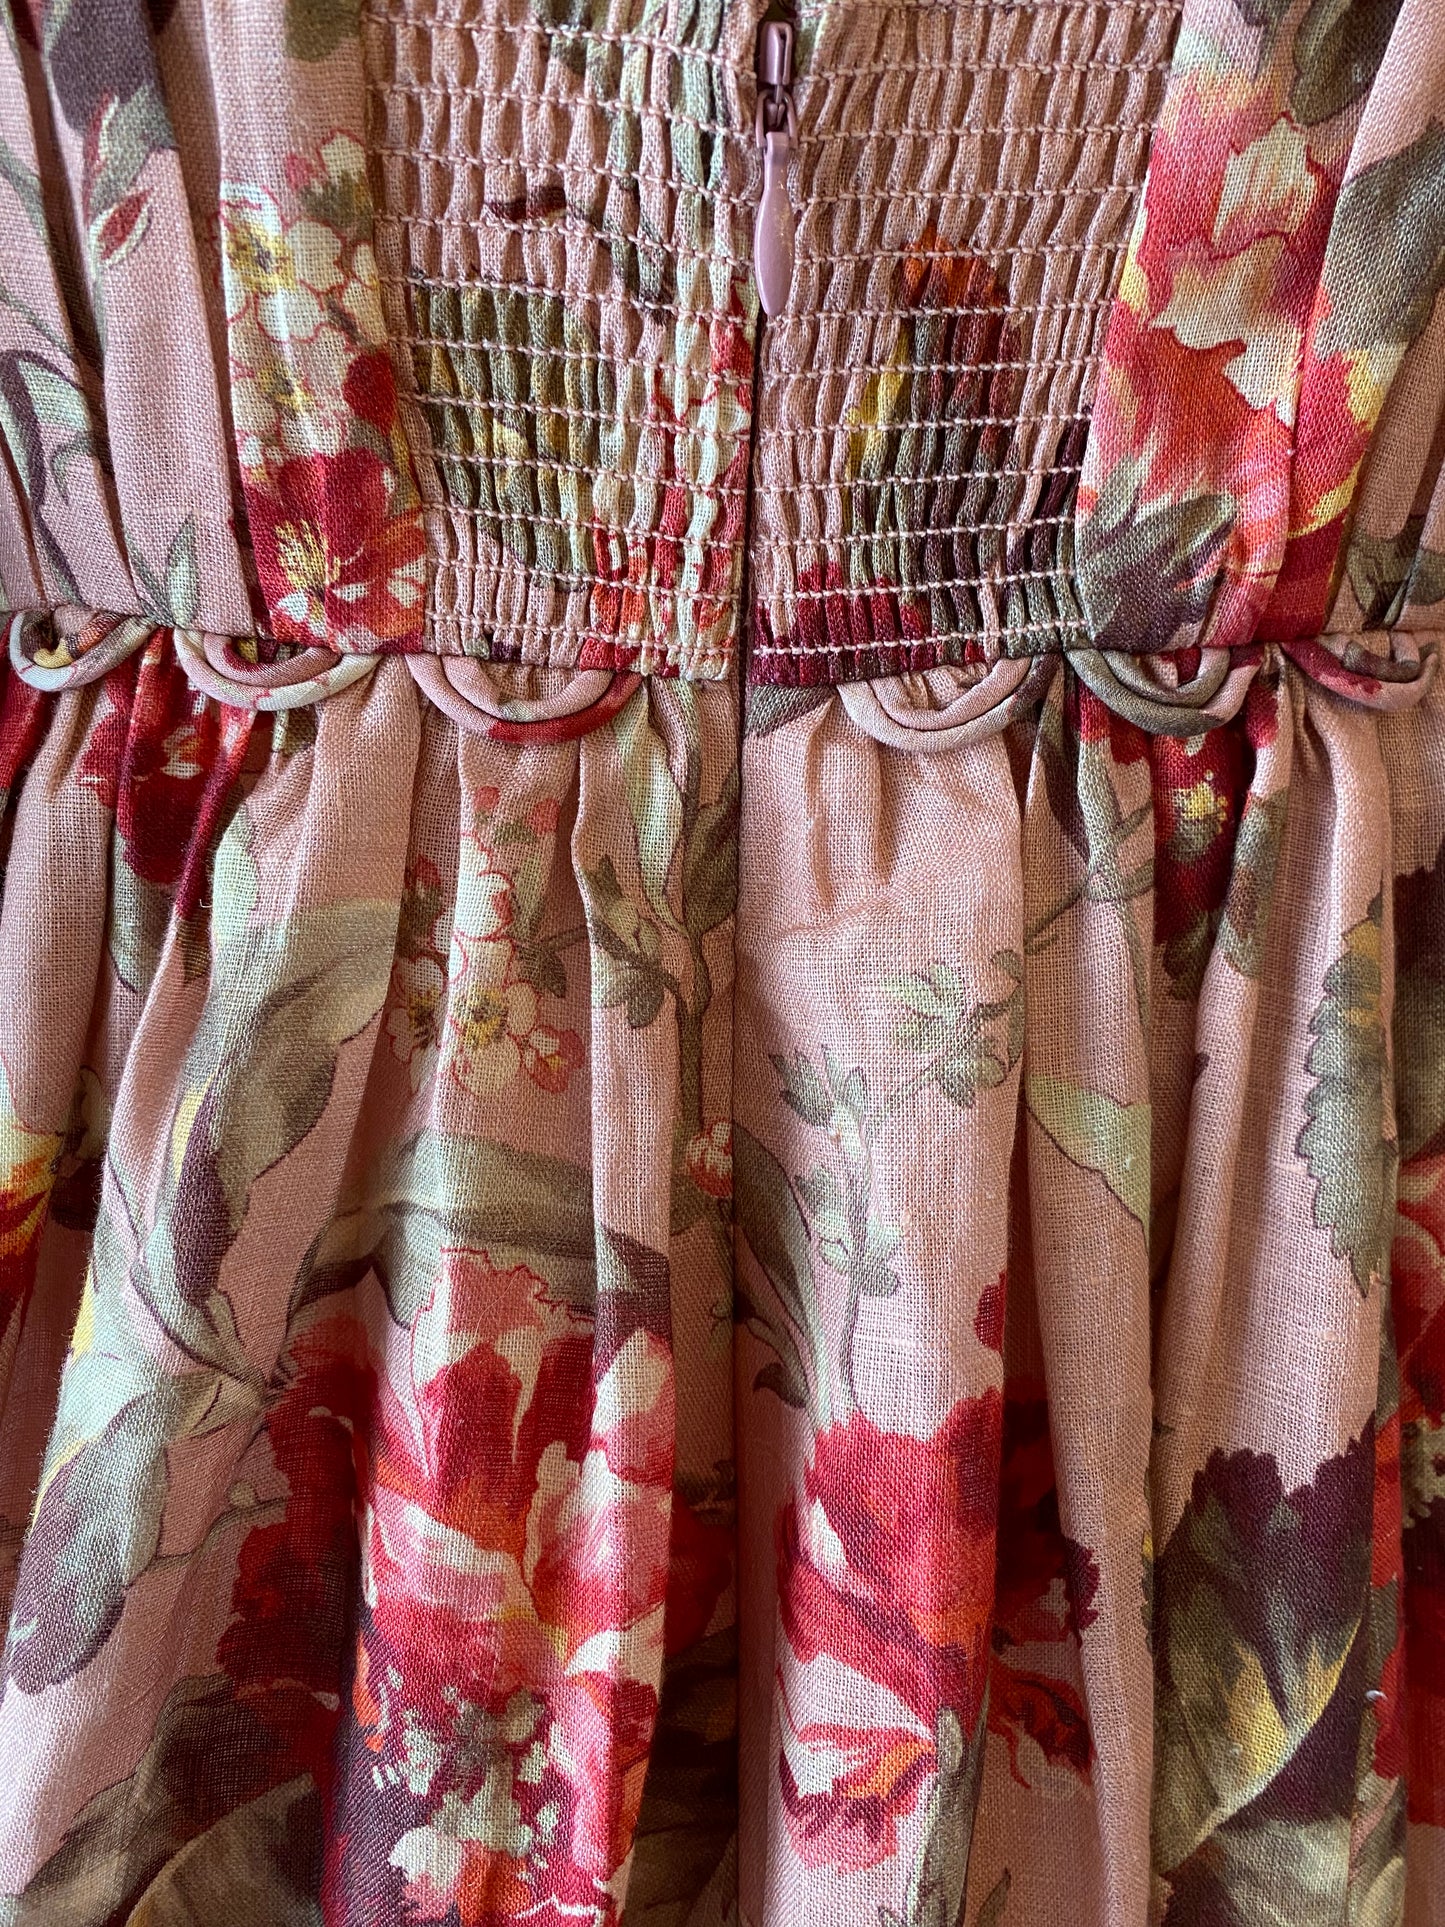 ZIMMERMANN Floral-Print Empire-Waist Dress Size 1/S